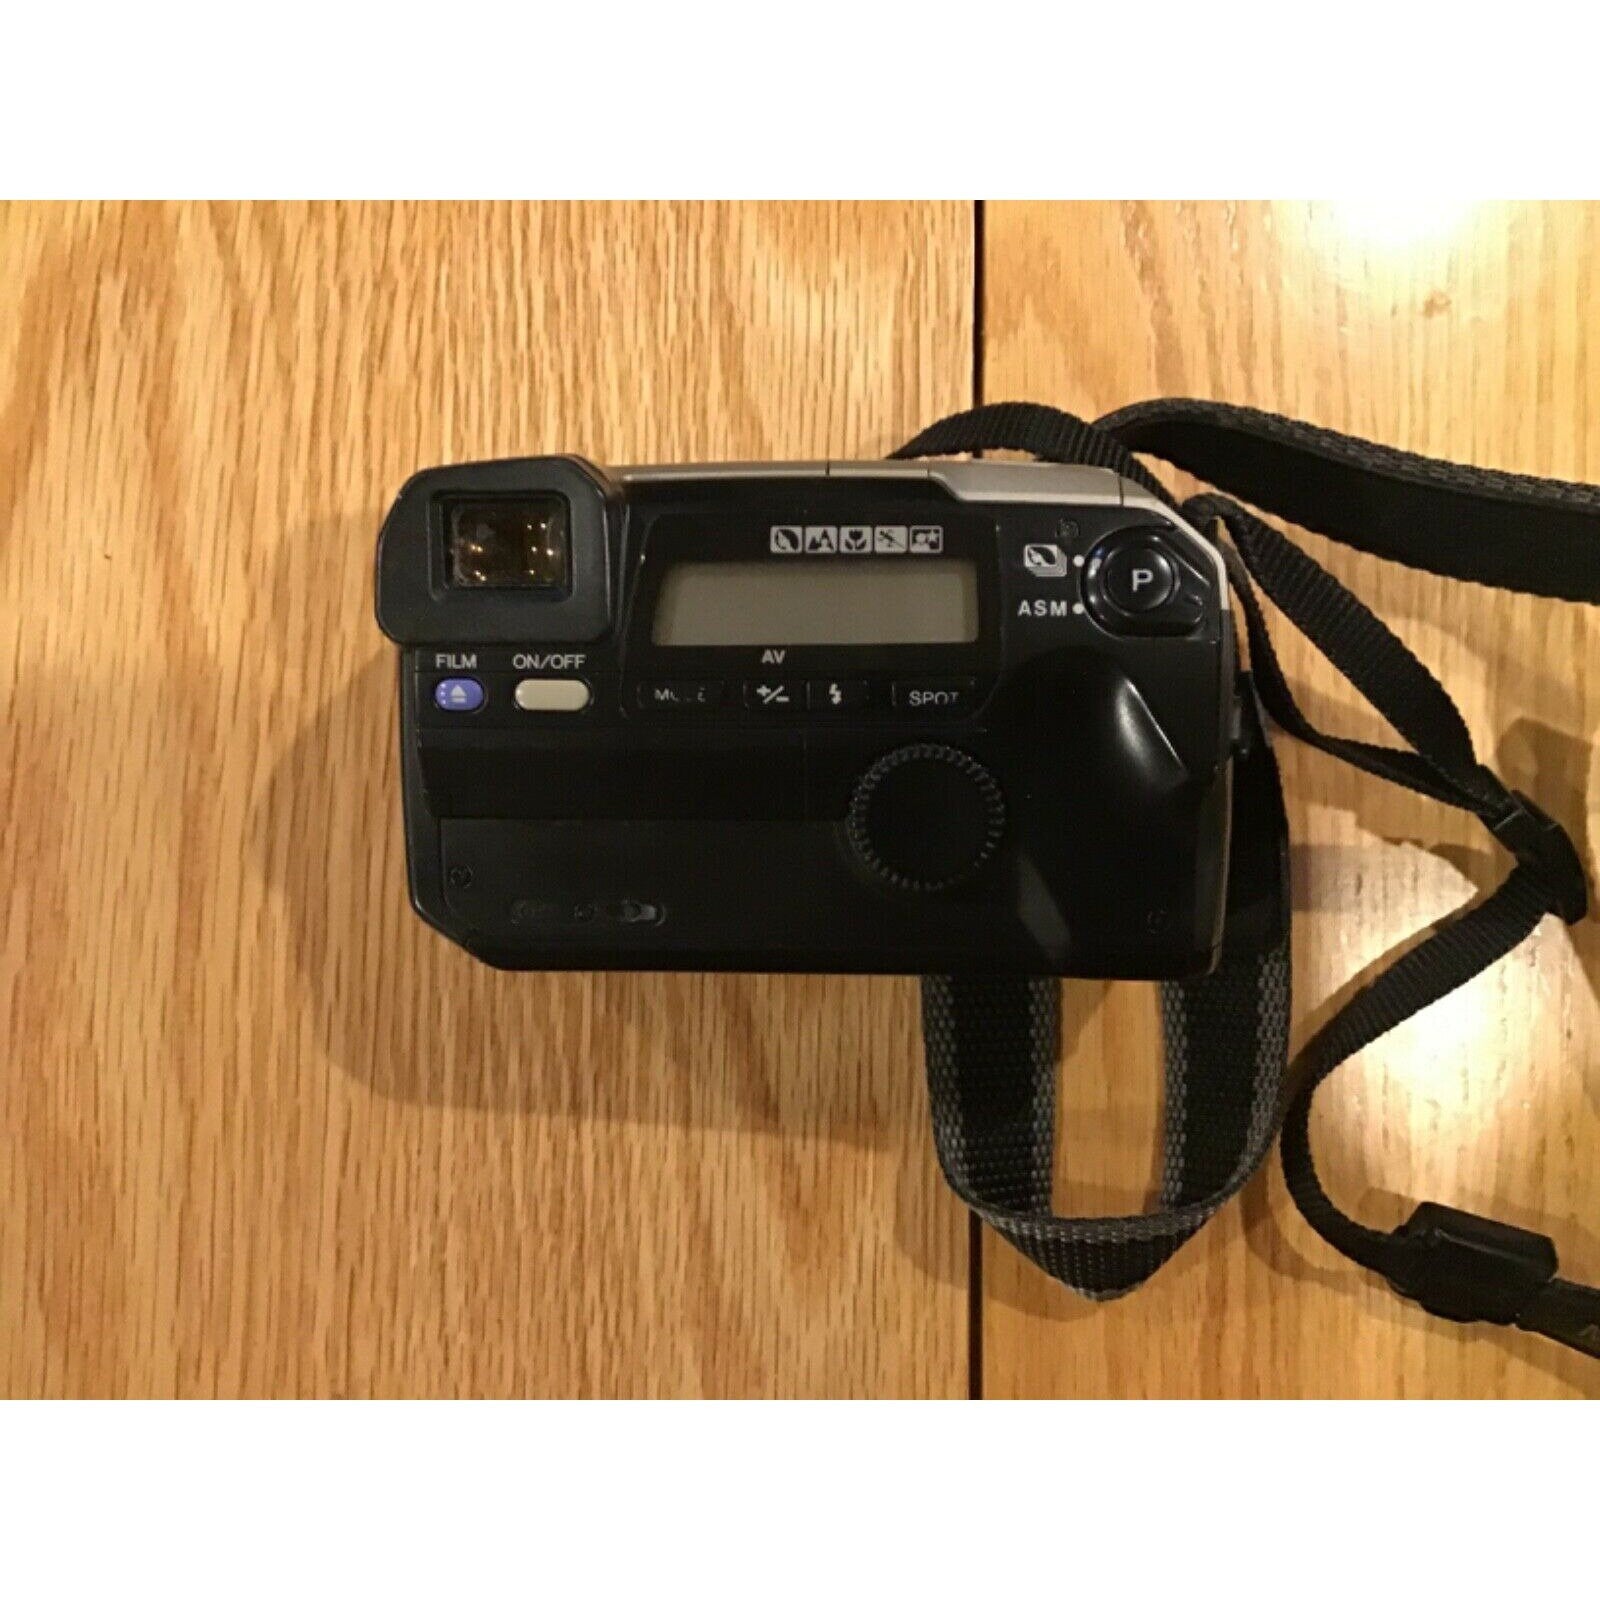 Minolta Vectis S-1 APS SLR Film Camera